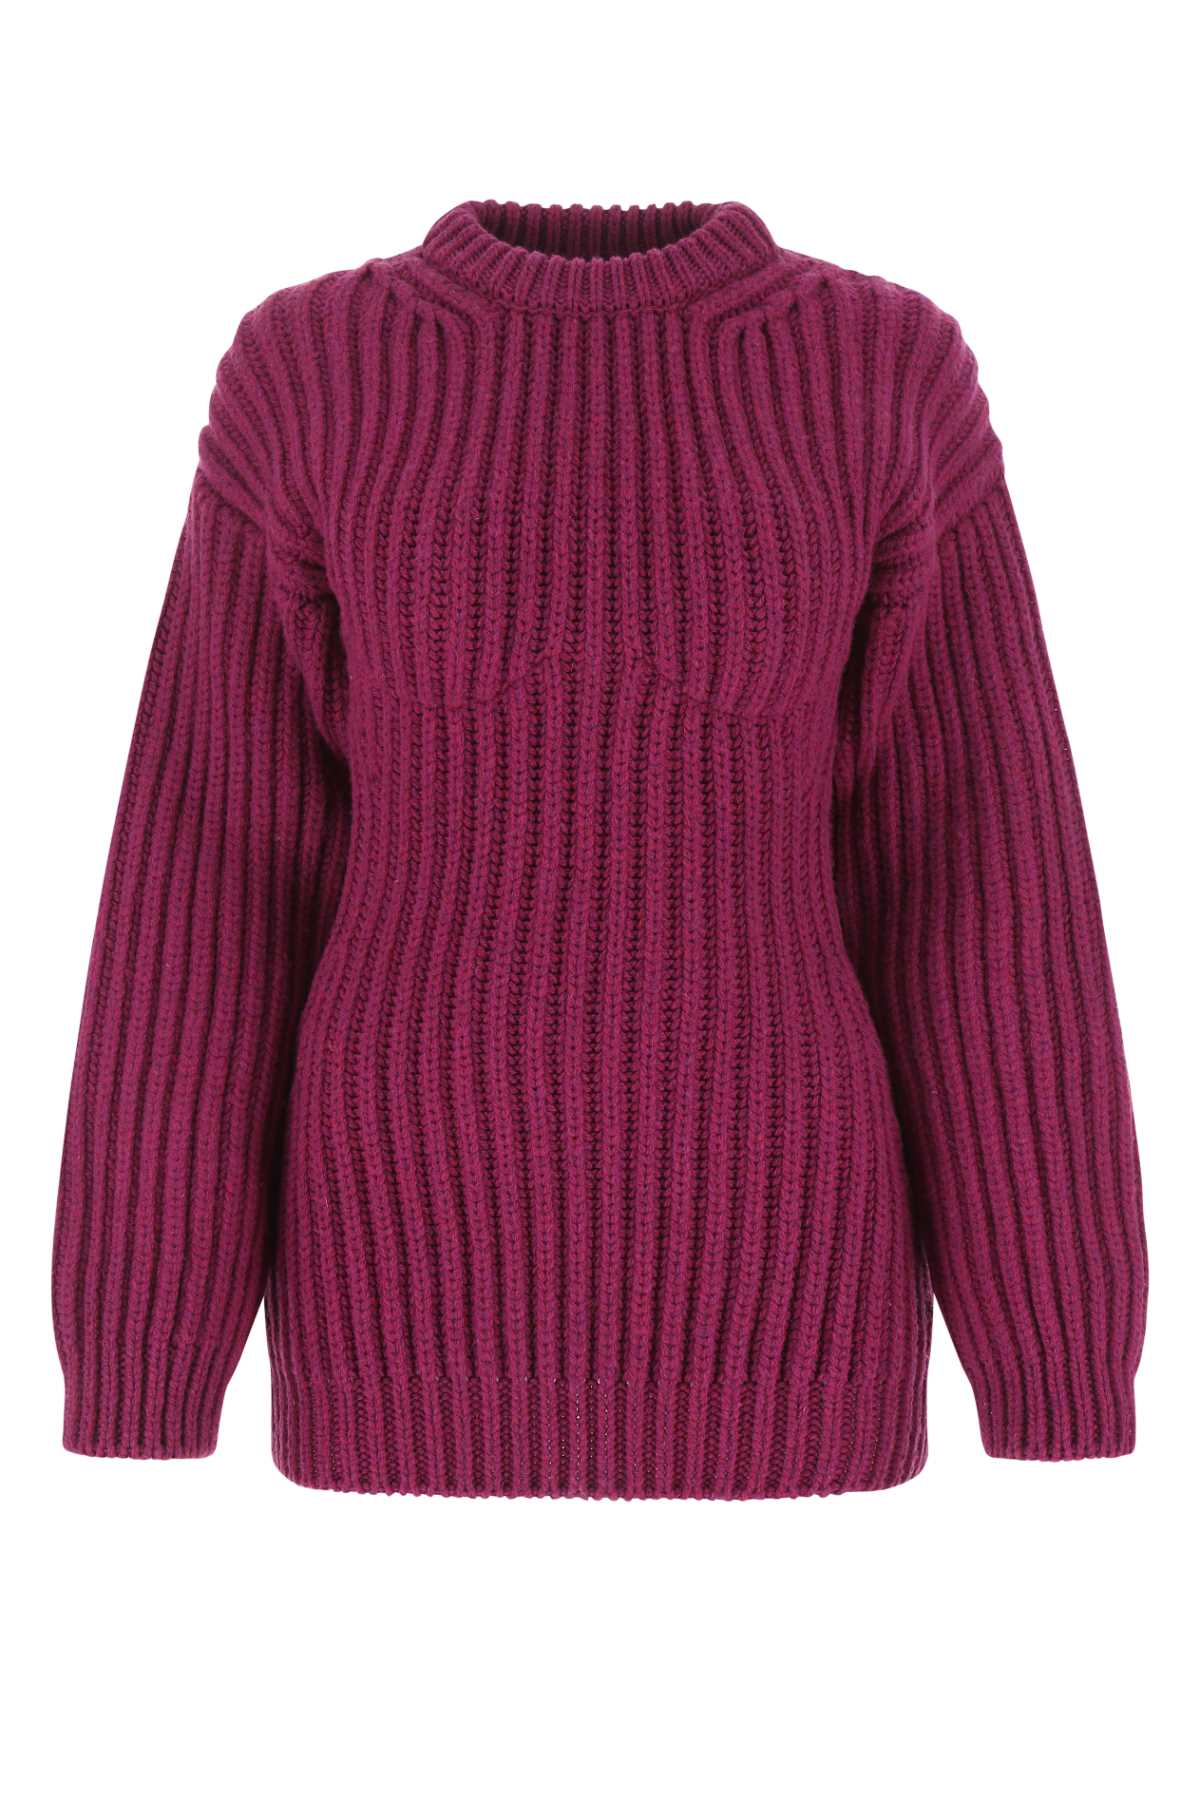 Tyrian Purple Wool Sweater